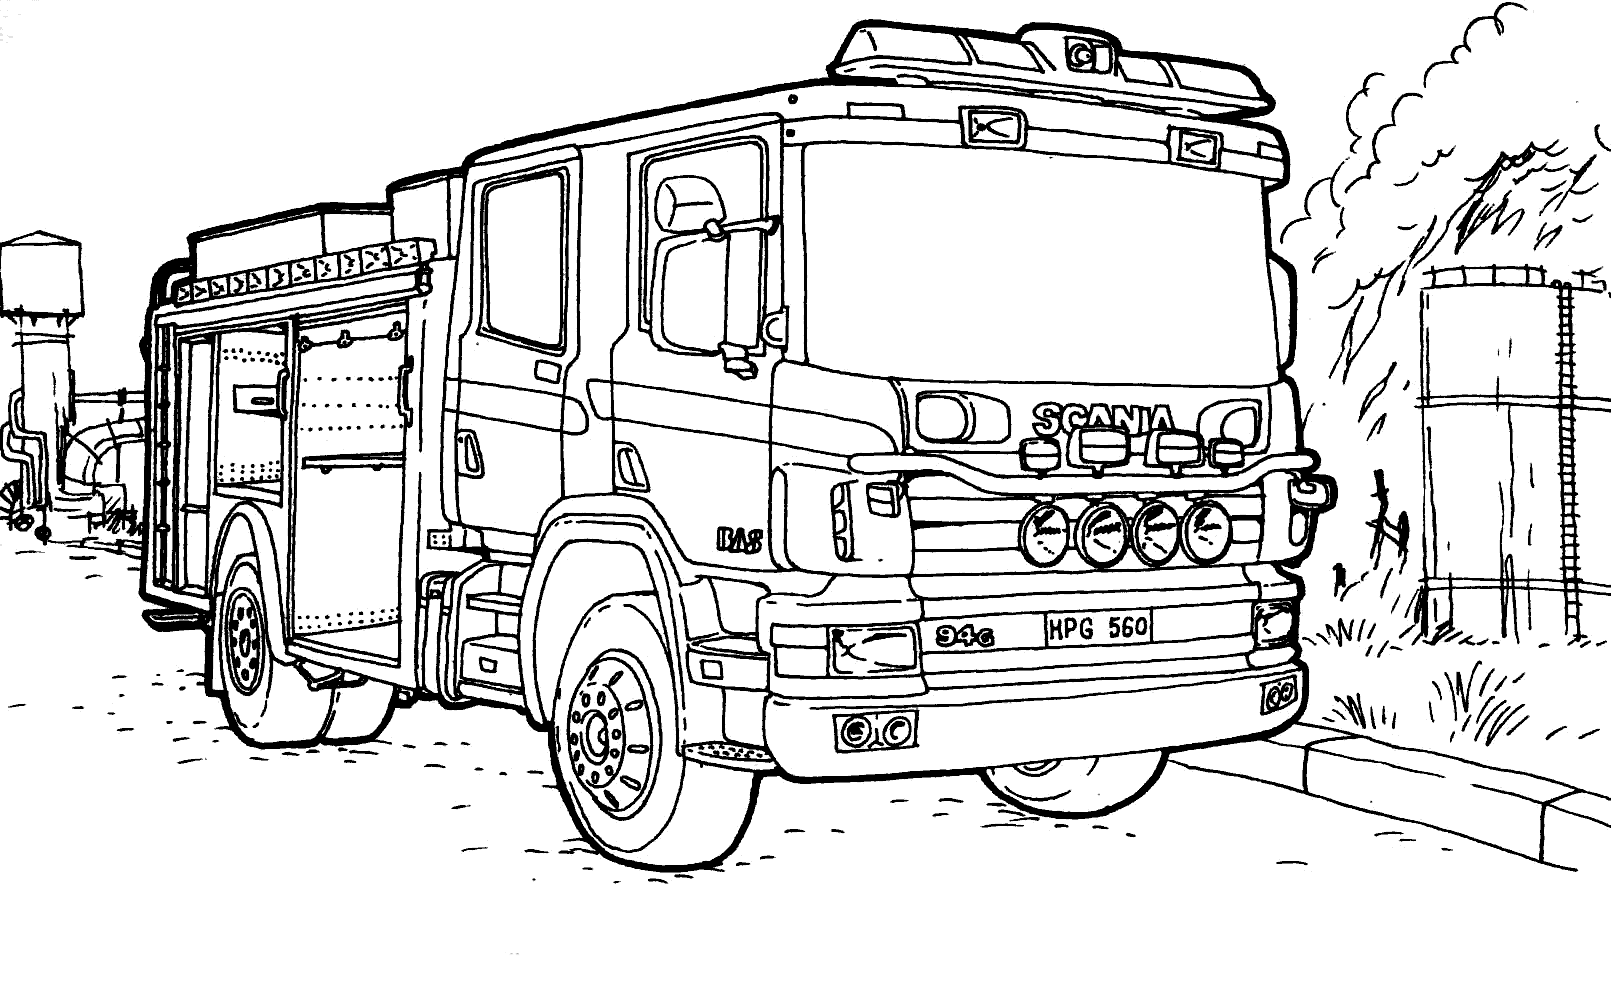 Пожарная машина рисунок для детей